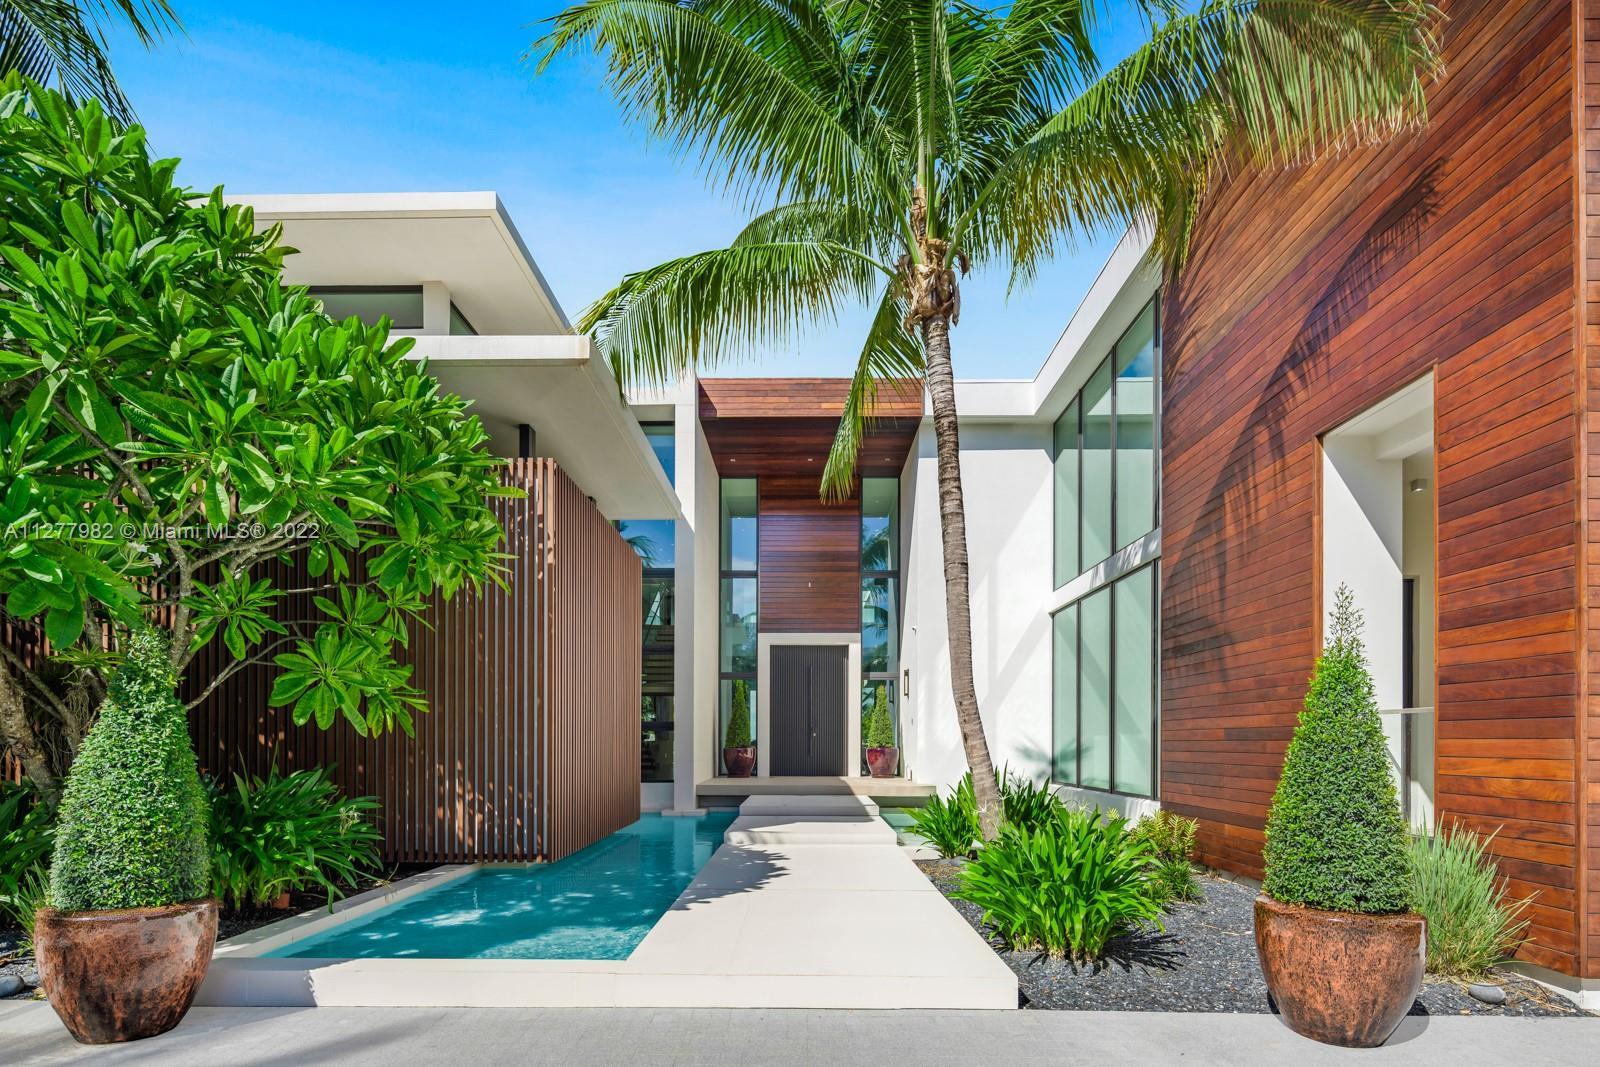 Tropical modern masterpiece on exclusive Allison Island architecture & design firm Choeff Levy Fisch